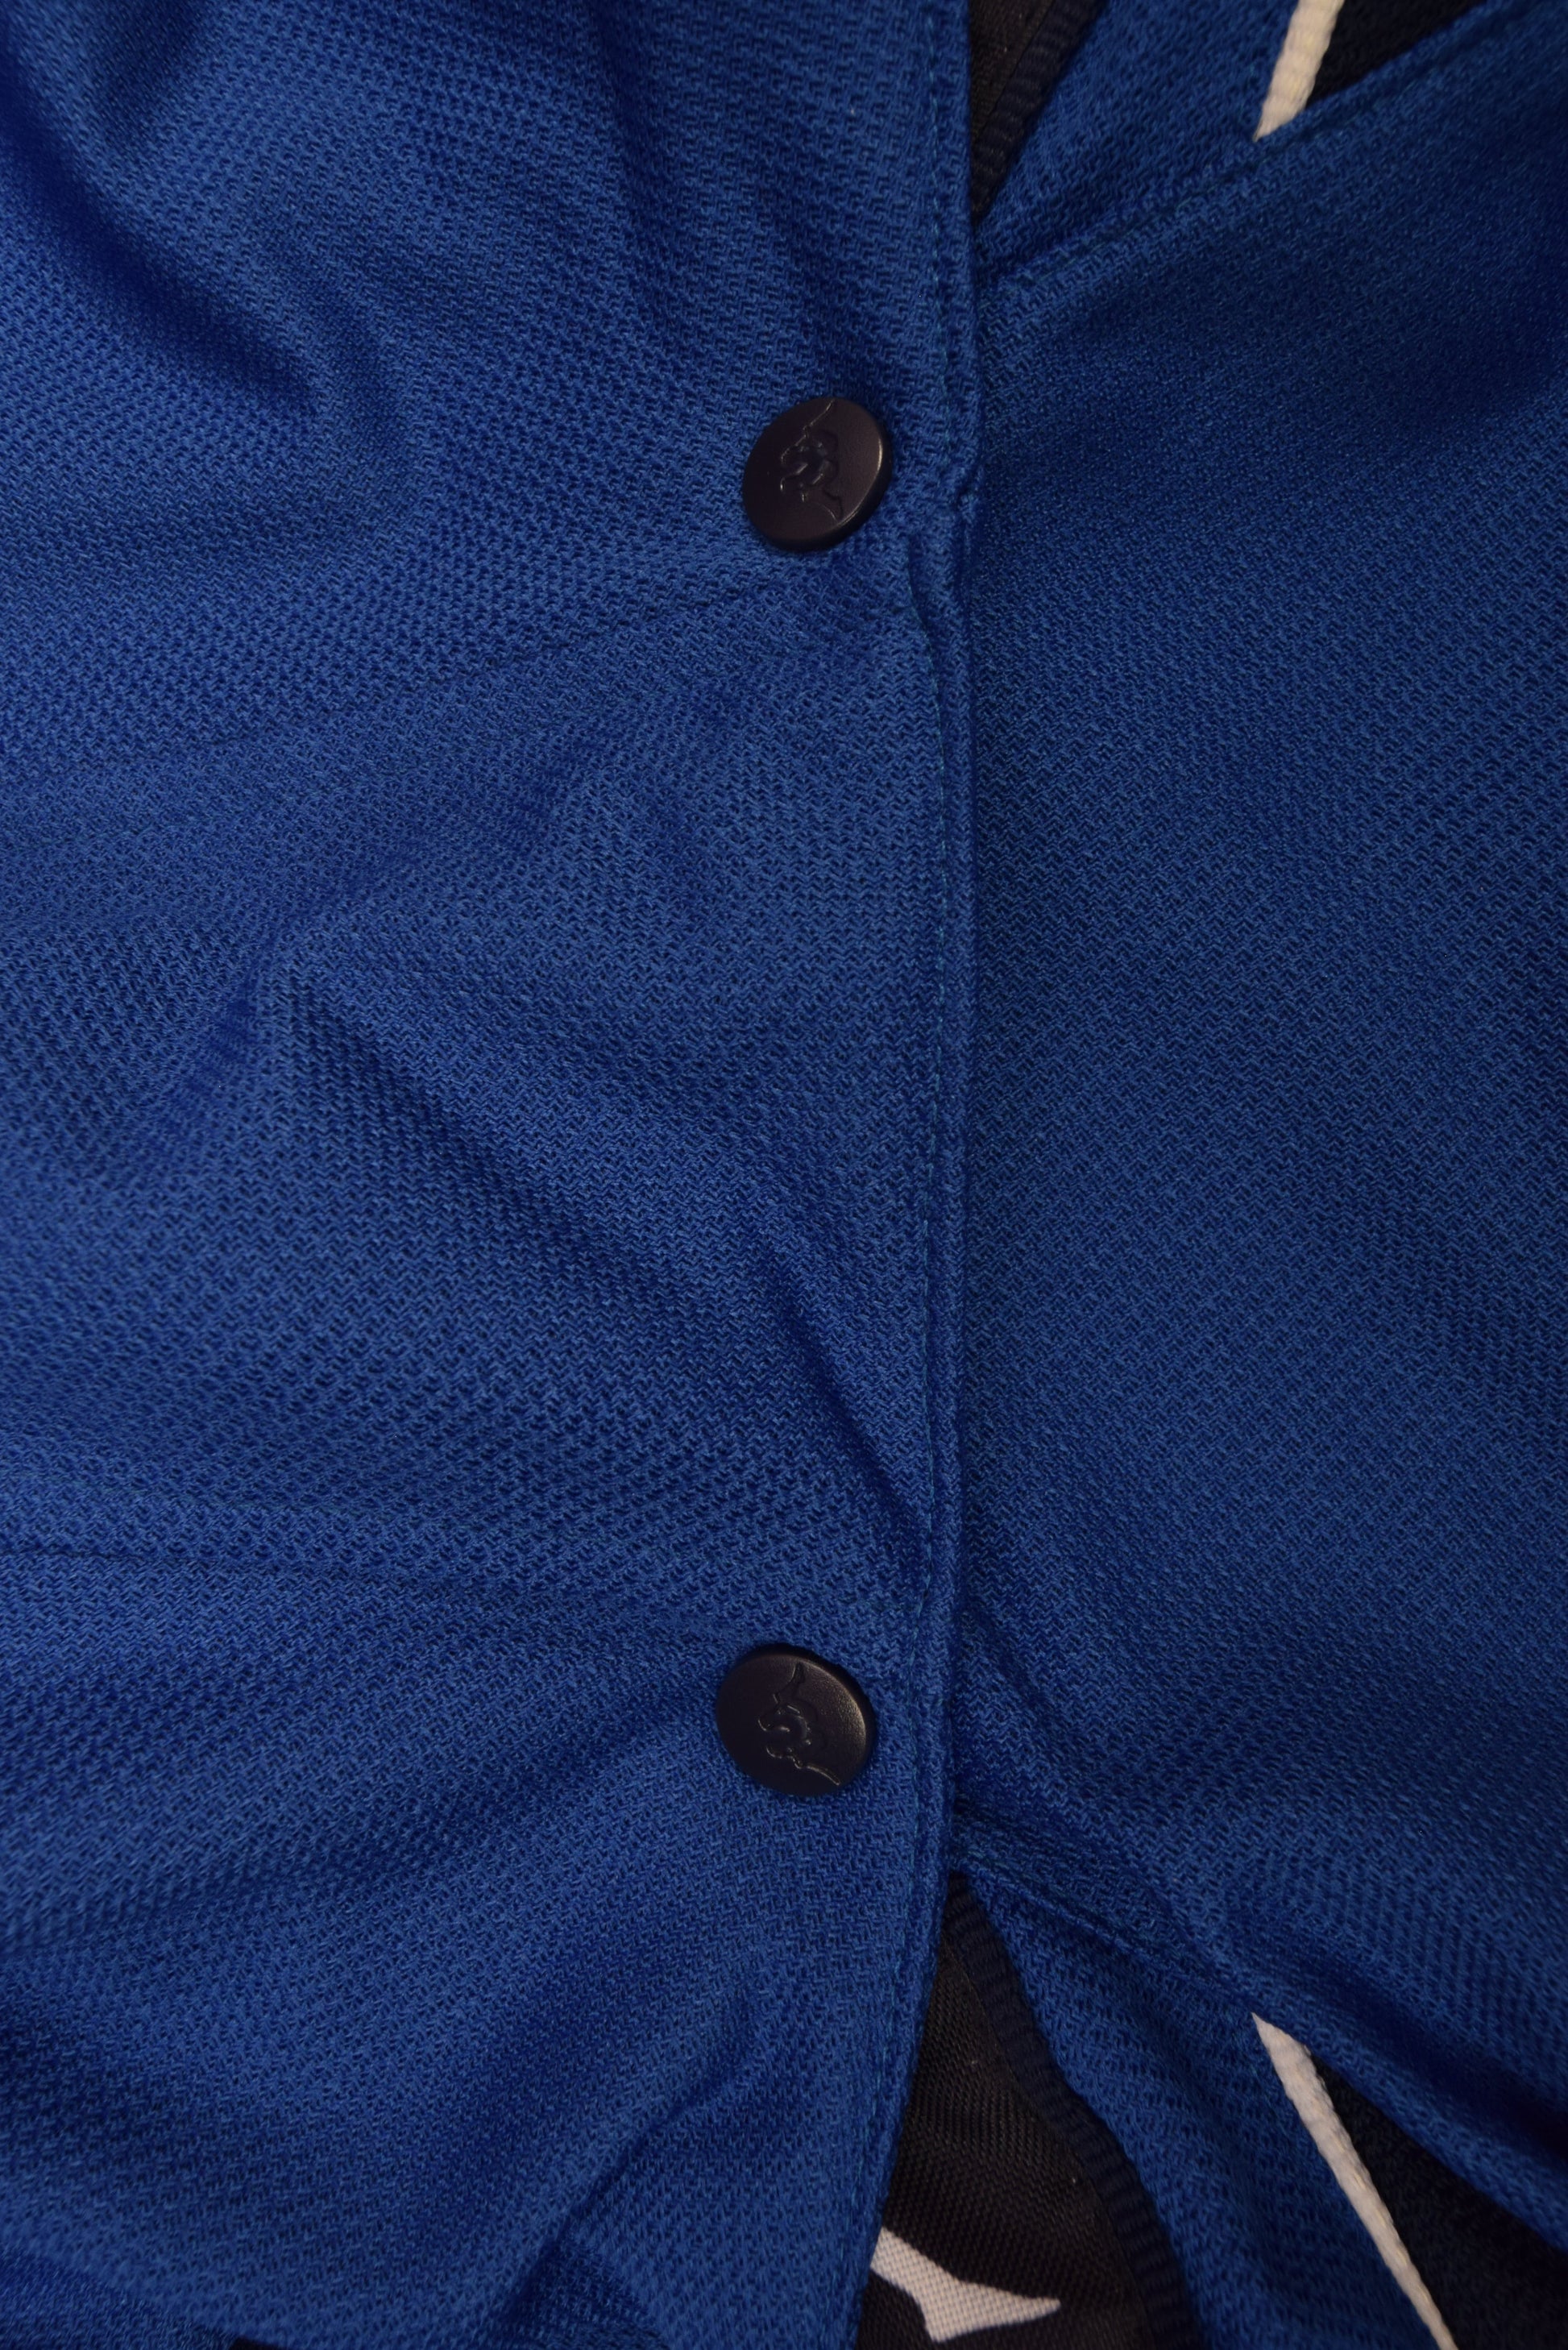 Italy Italia Kappa 1999 - 2000 Hooded Jacket Made in Italy Blue Size M